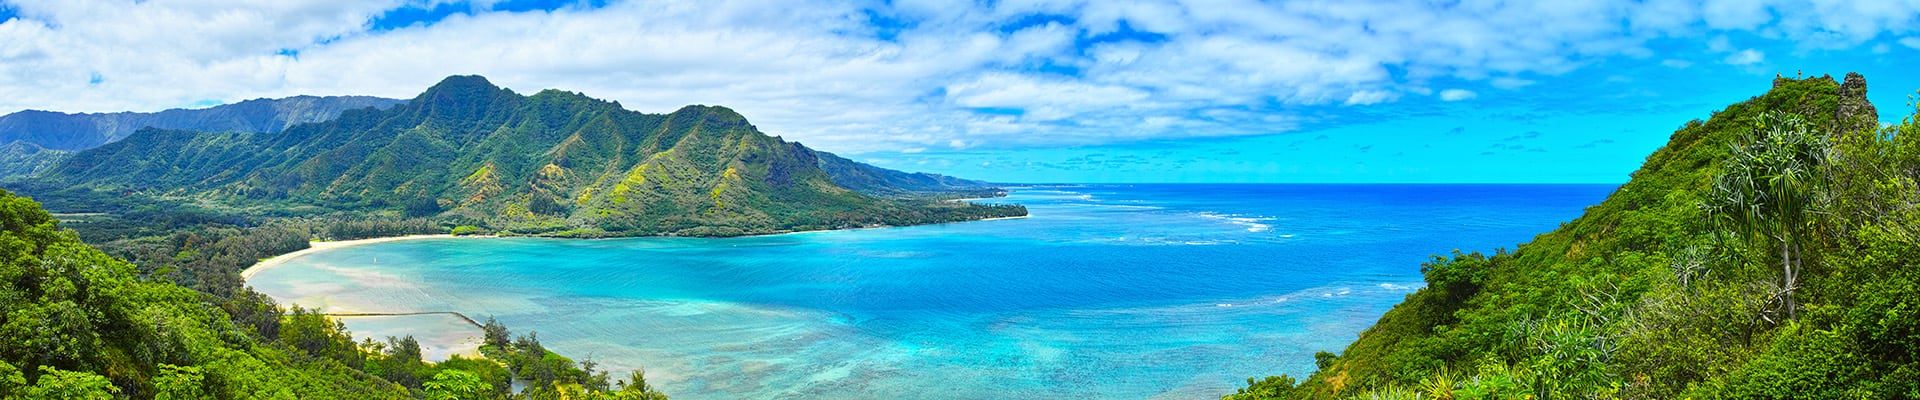 hawaiian islands cruise